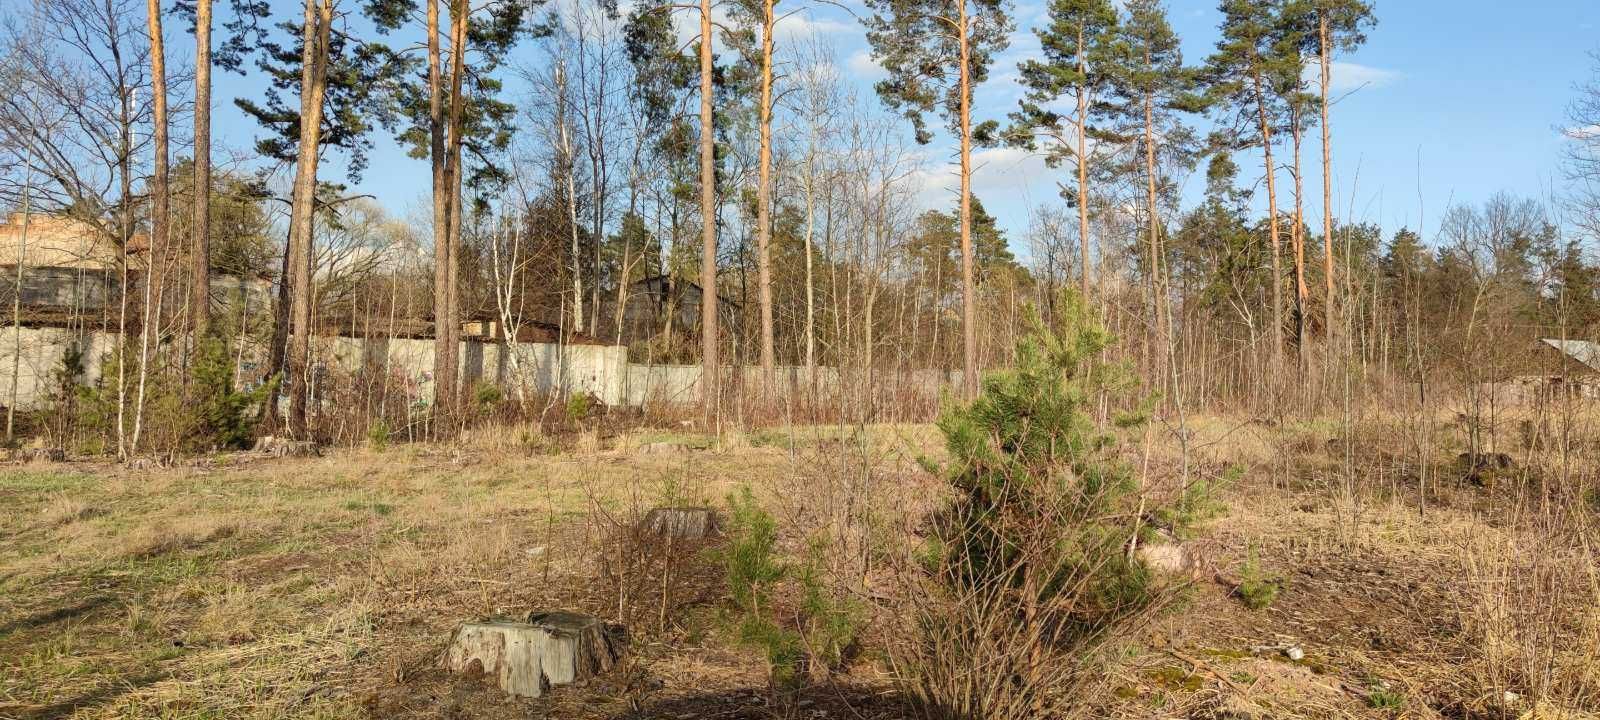 Продаж земельної ділянки 15 соток у c. Клавдієво-Тарасове.